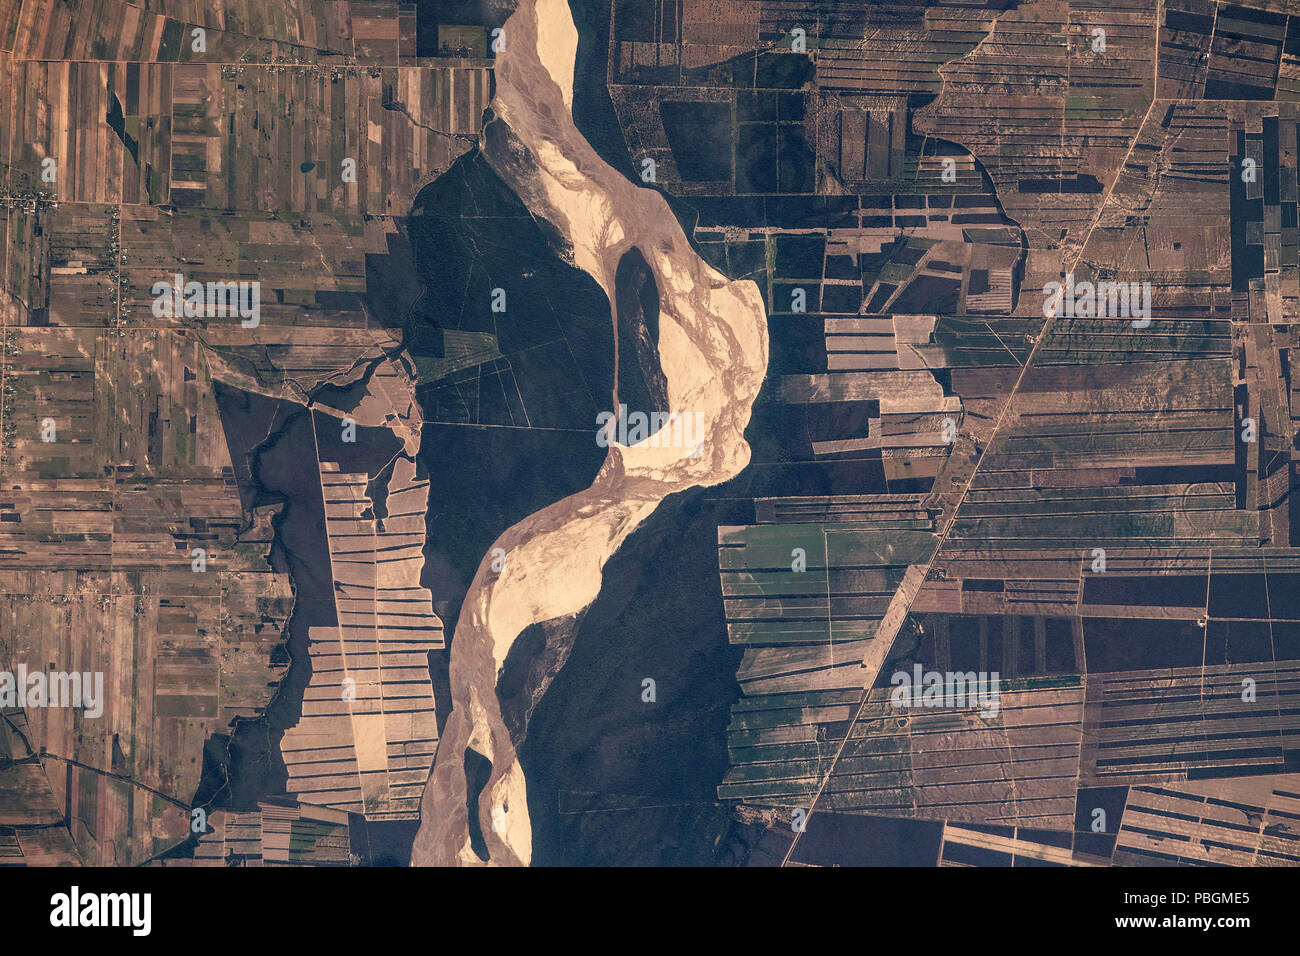 Image satellite de la NASA de Rio Grande river et motif géométrique des champs cultivés, la Bolivie, l'Amérique du Sud Banque D'Images